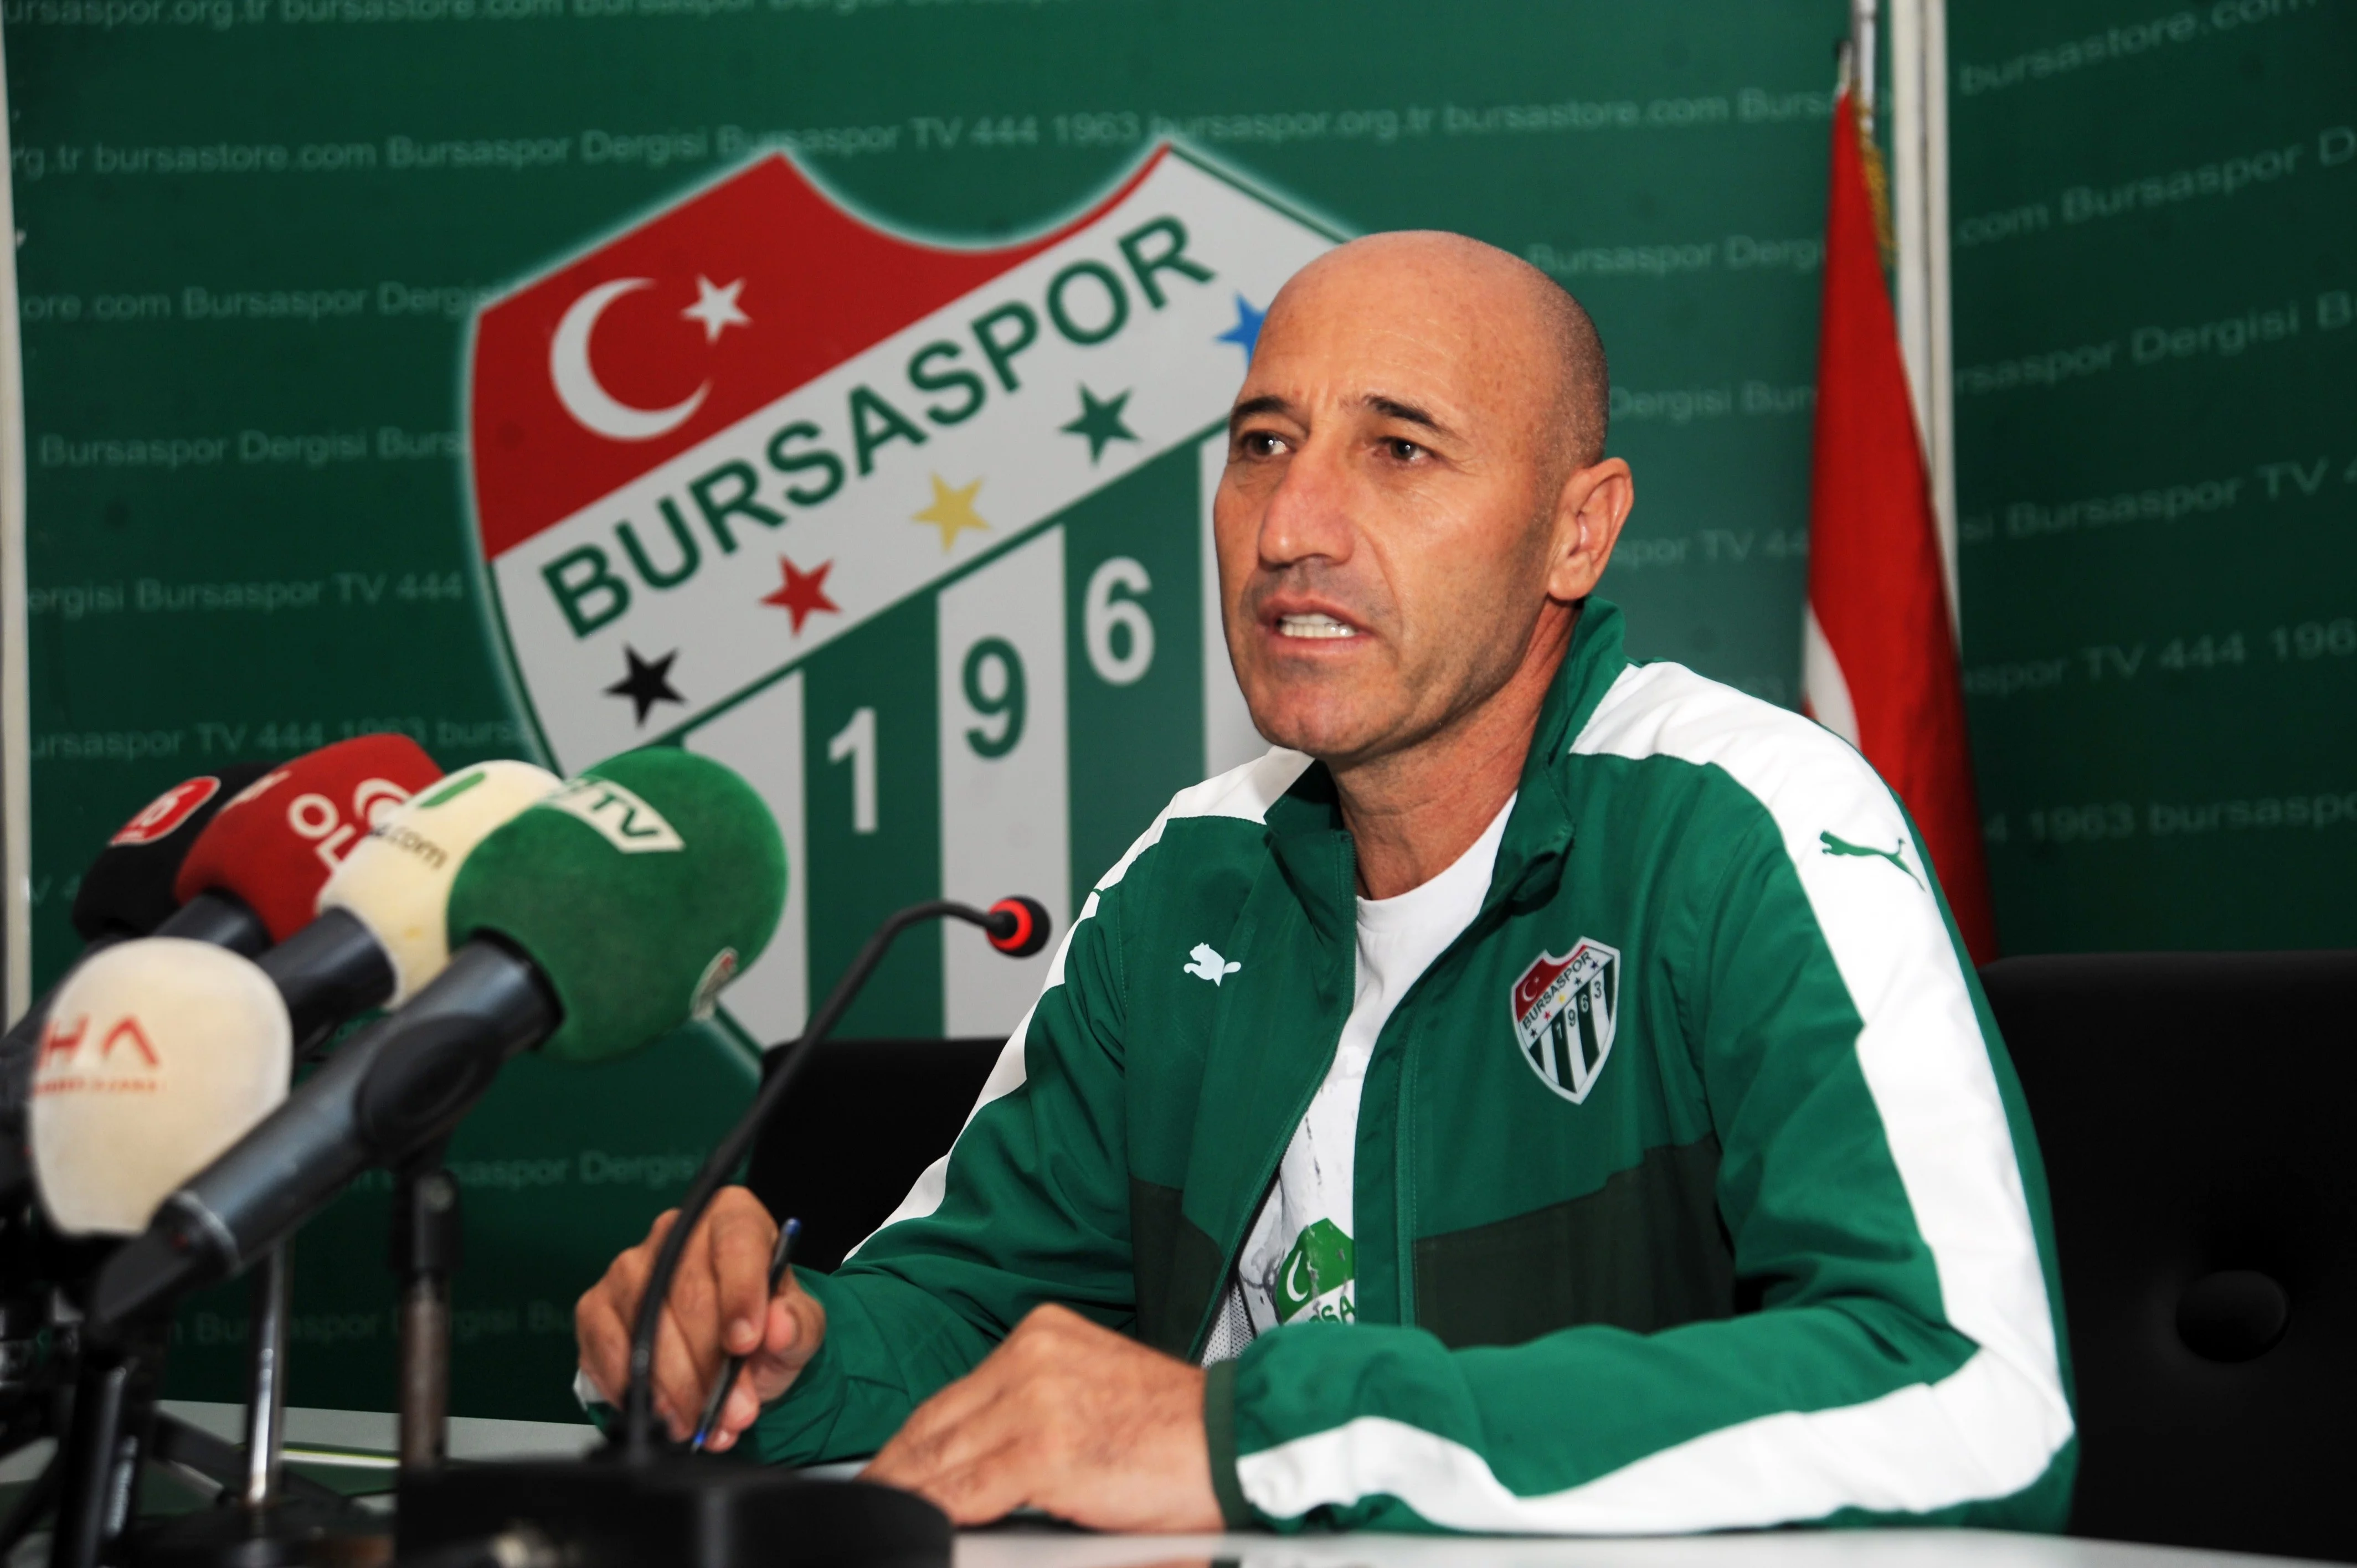 Örnek: “Bursaspor açısından en önemli 90 dakikaya çıkıyoruz”